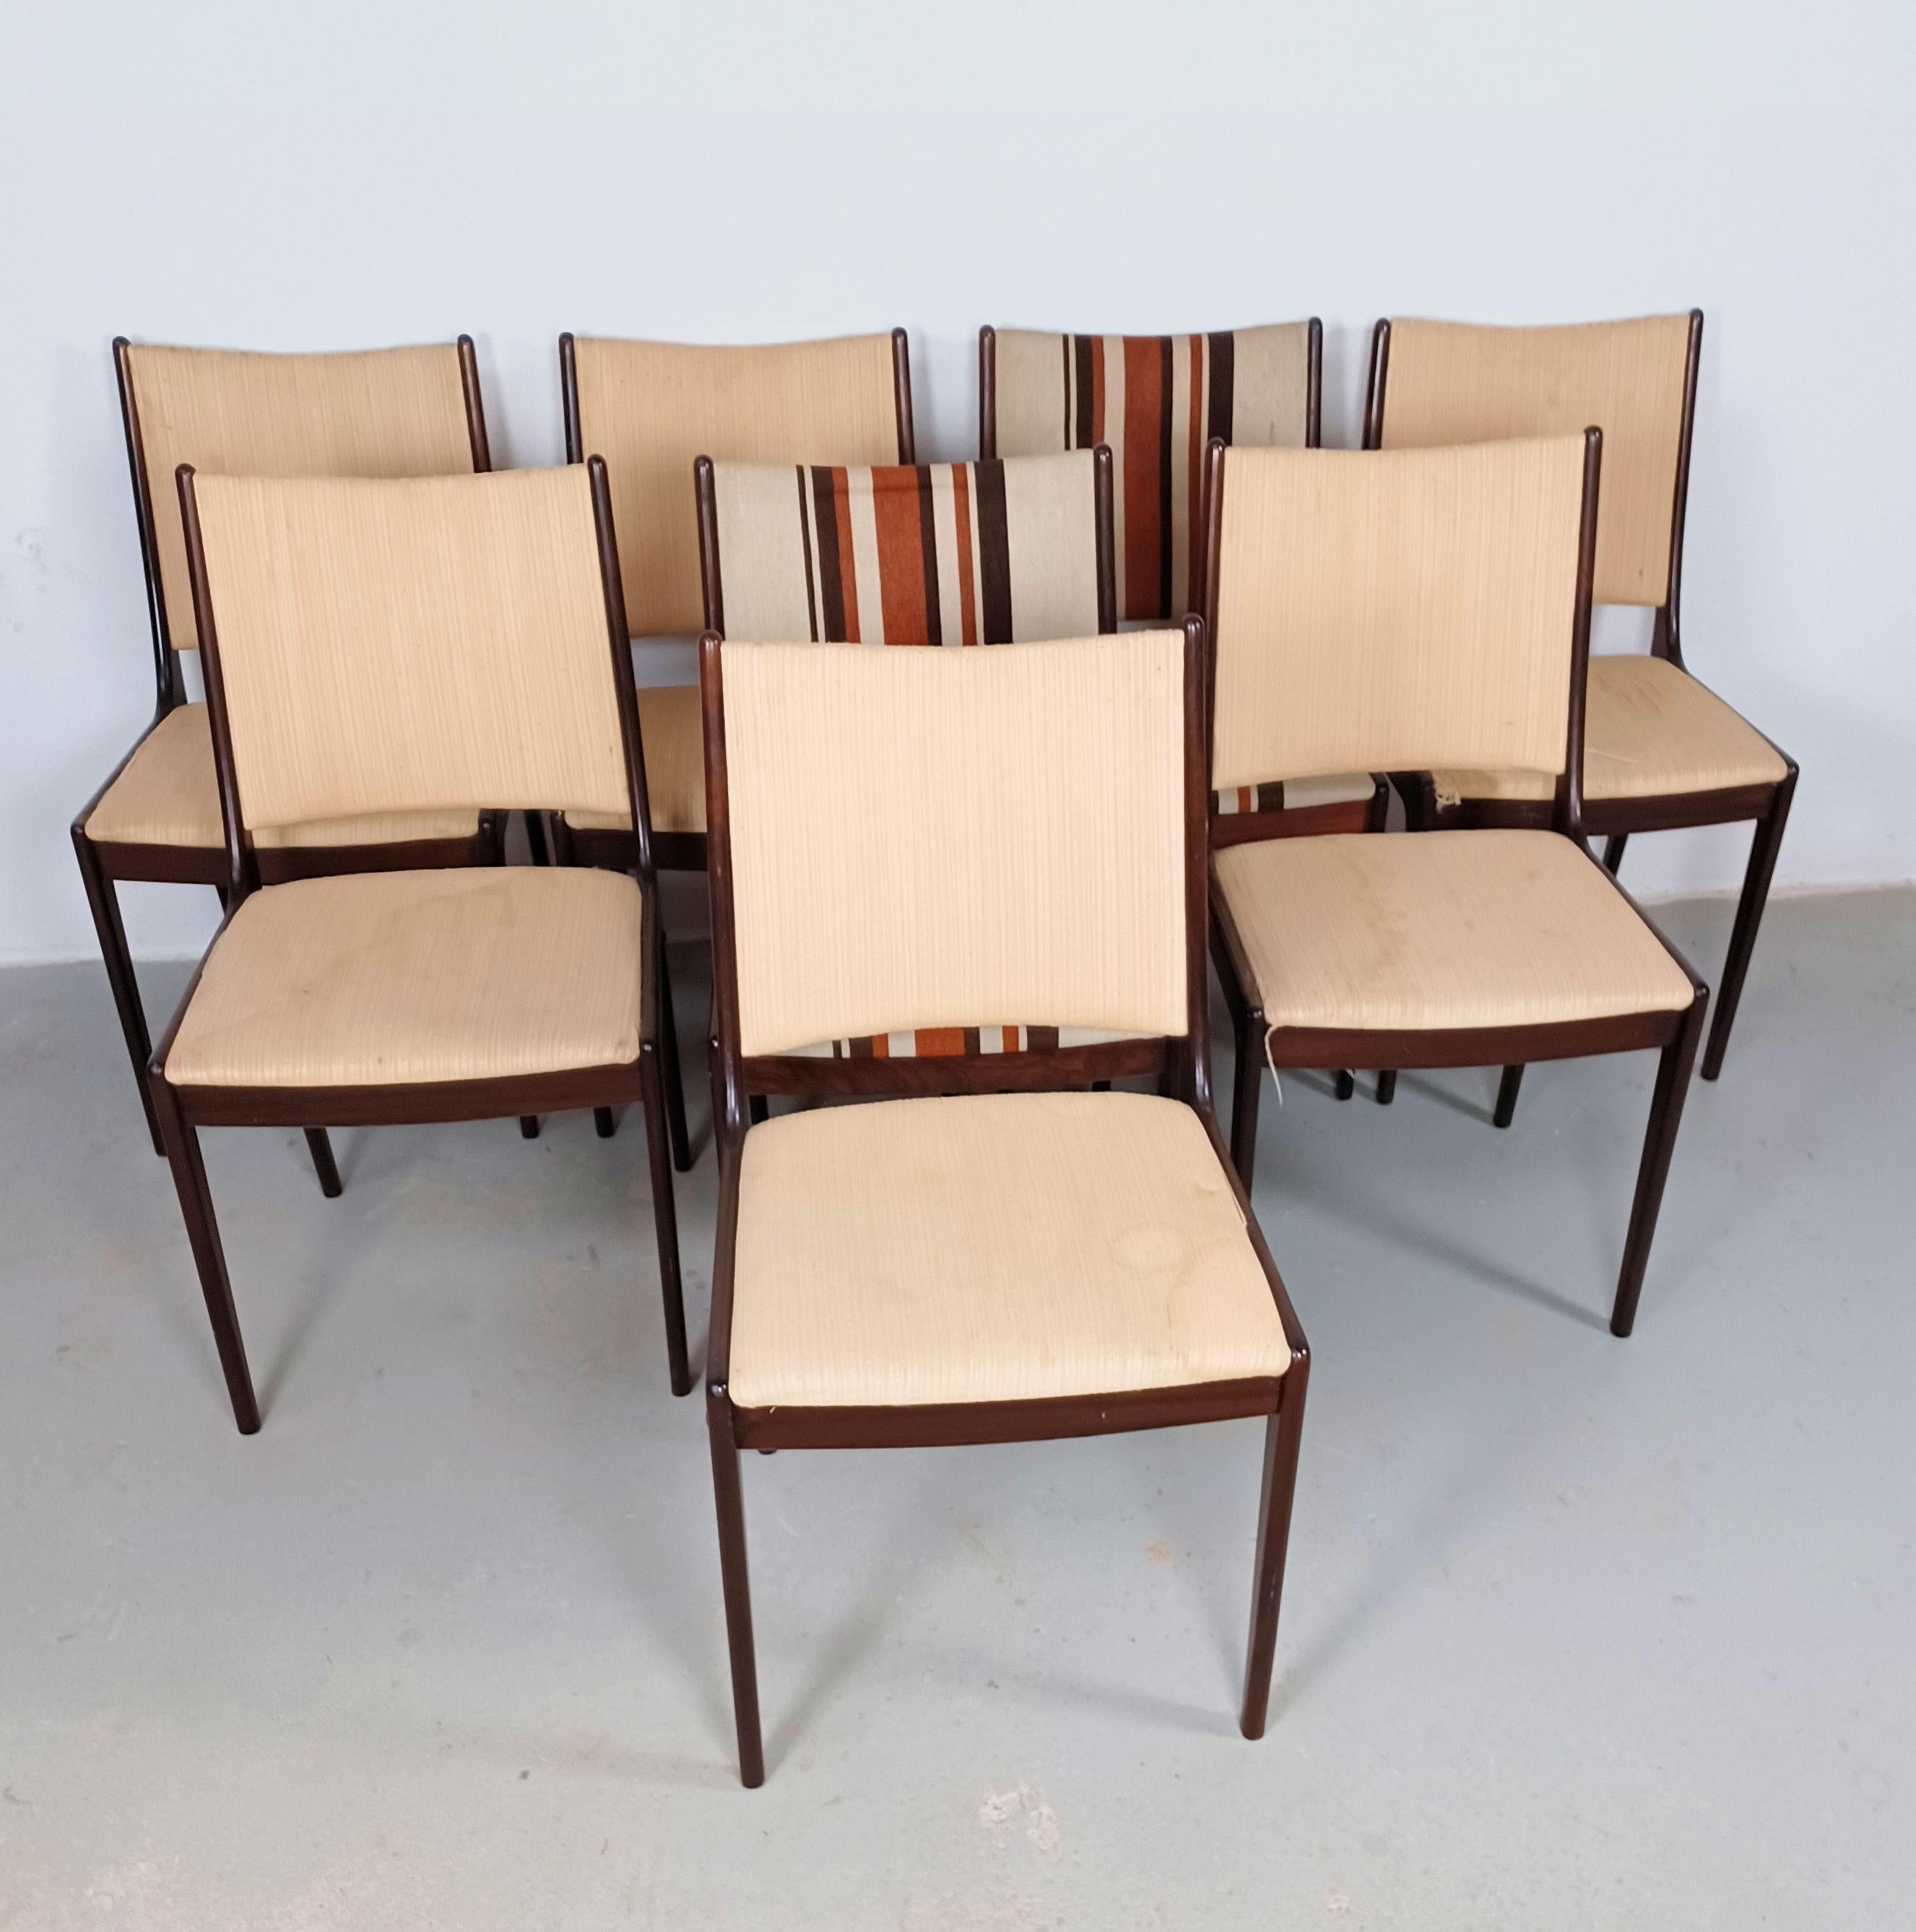 Acht restaurierte Johannes-Andersen-Esszimmerstühle aus Mahagoni von Uldum Møbler, Dänemark, aus den 1960er Jahren, einschließlich maßgeschneiderter Neupolsterung.

Die Esszimmerstühle zeichnen sich durch ein schlichtes, aber elegantes Design aus,